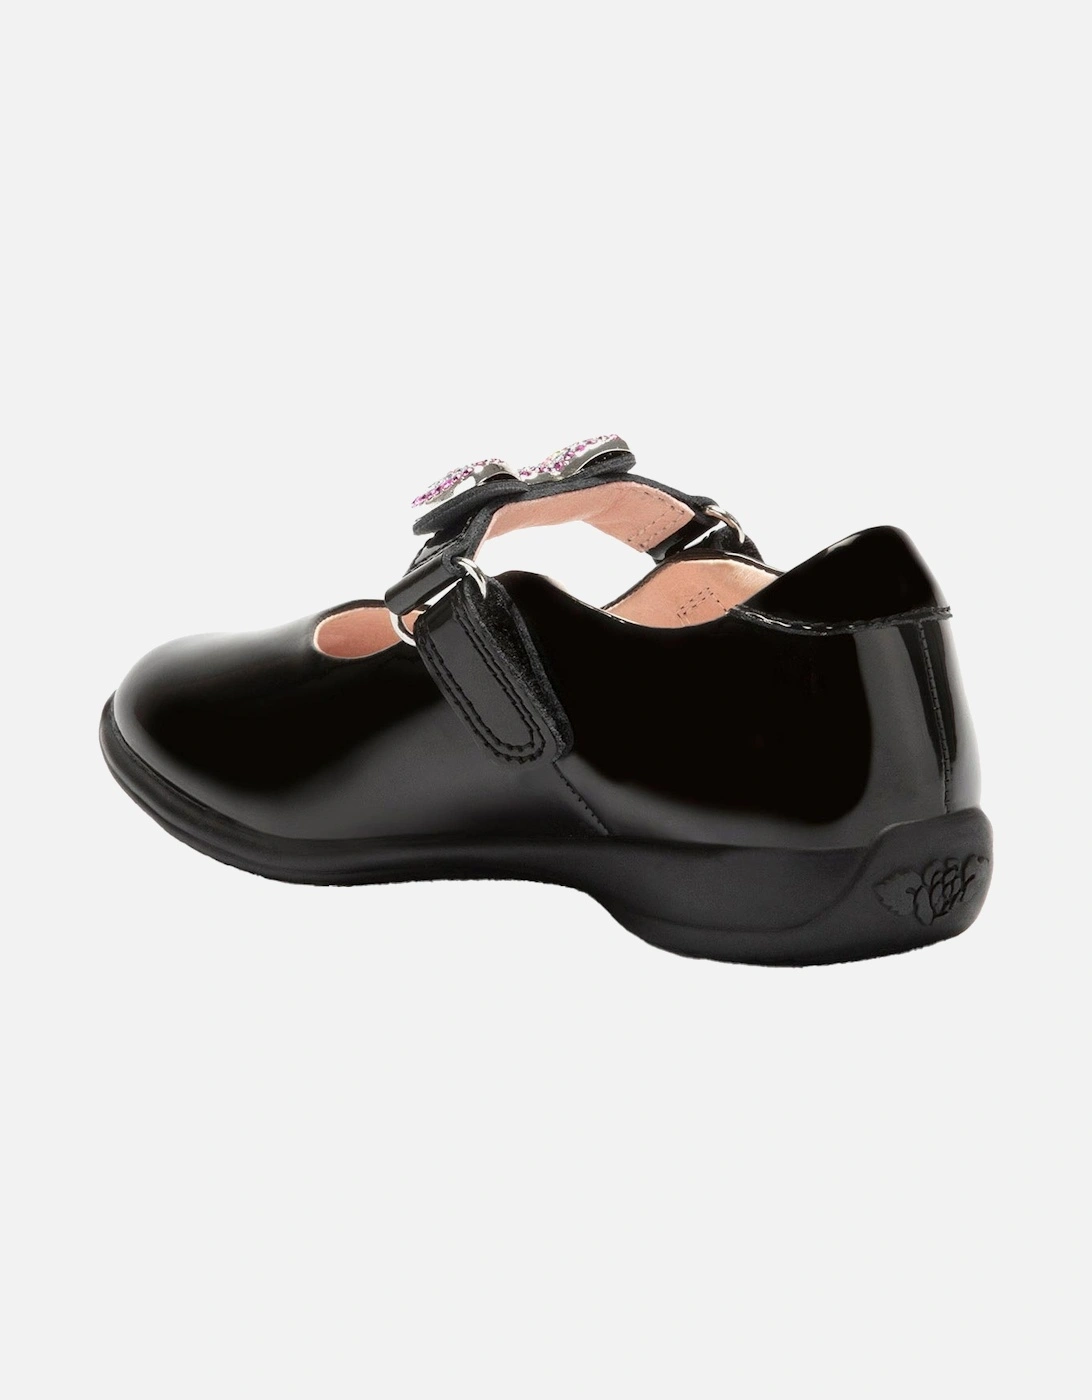 Juniors Erin Patent School Shoes (Black)